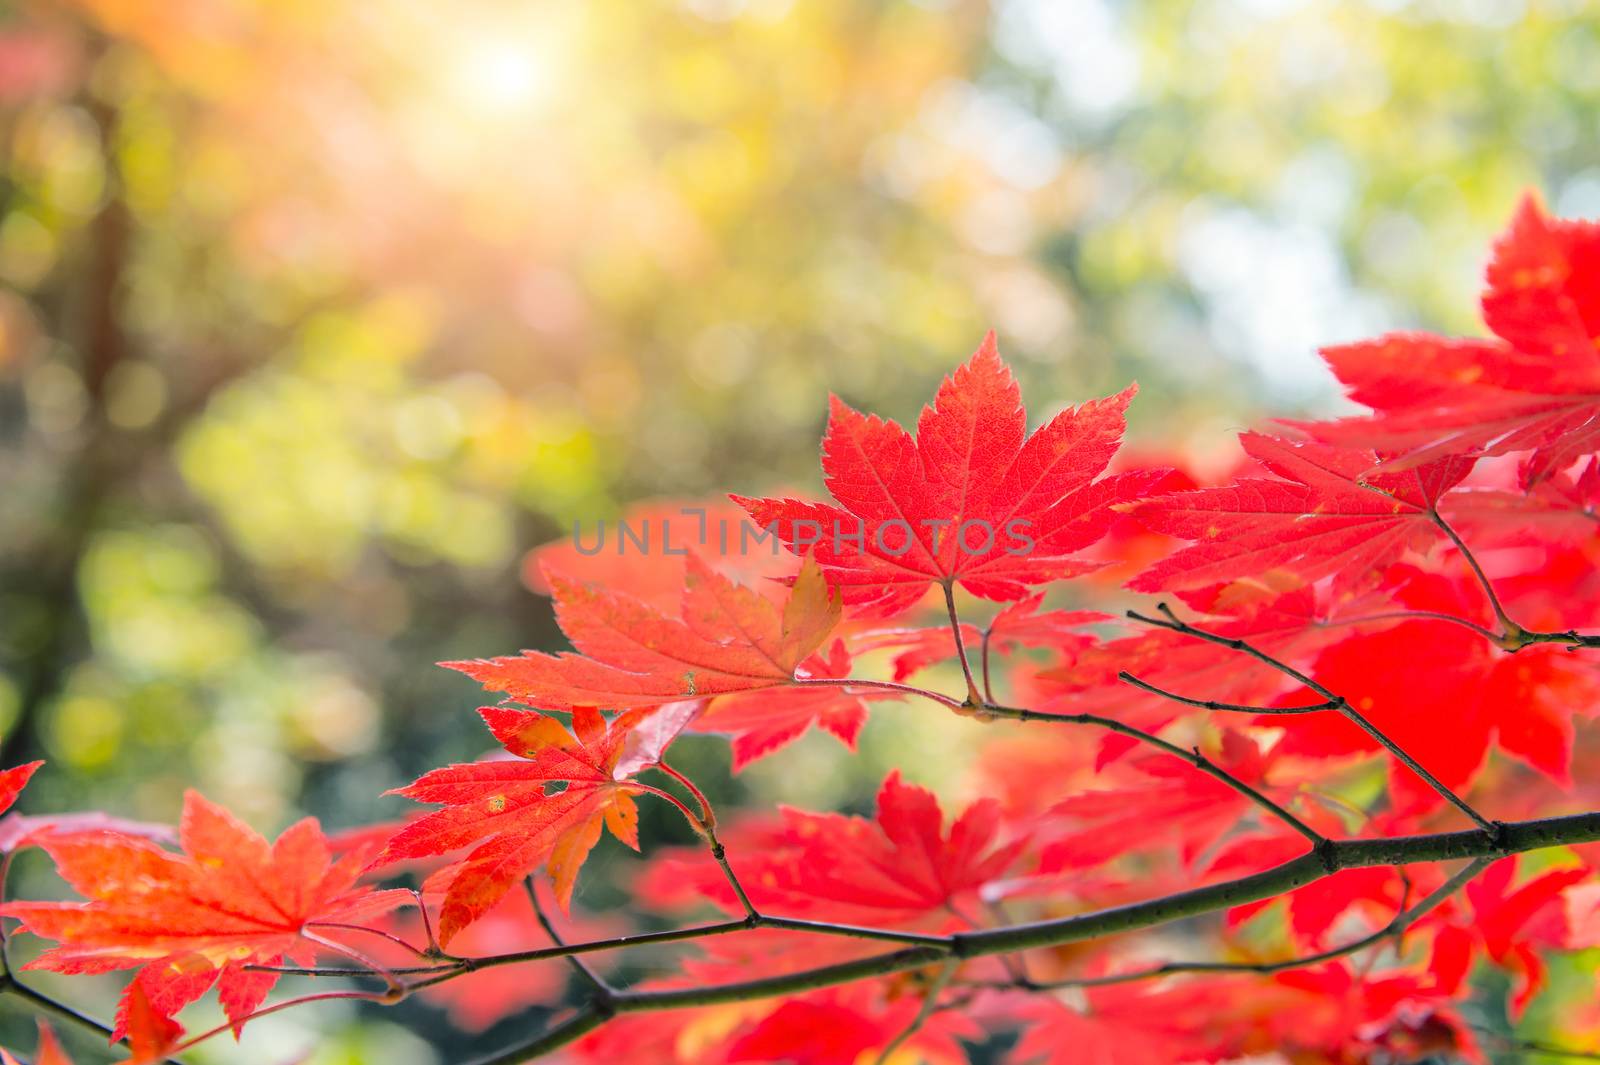 Maple leaf in autumn in korea,Autumn background.(Soft focus)